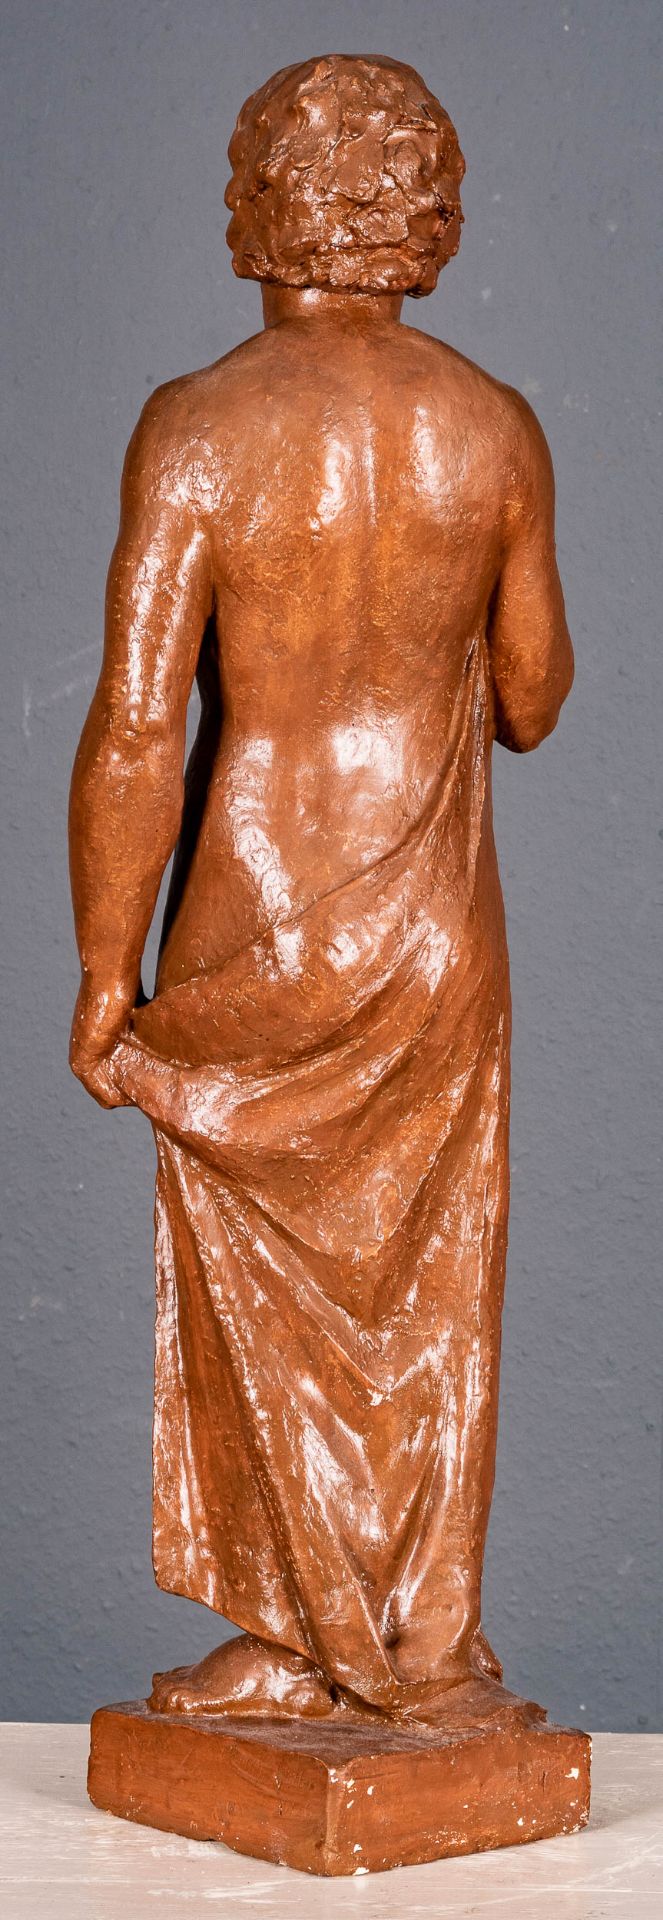 HEINRICH SCHLOTTER: "Die Badende" - Stukko, Standfigur von 1926. Nackte, stehende junge Frau, ihre  - Bild 13 aus 19